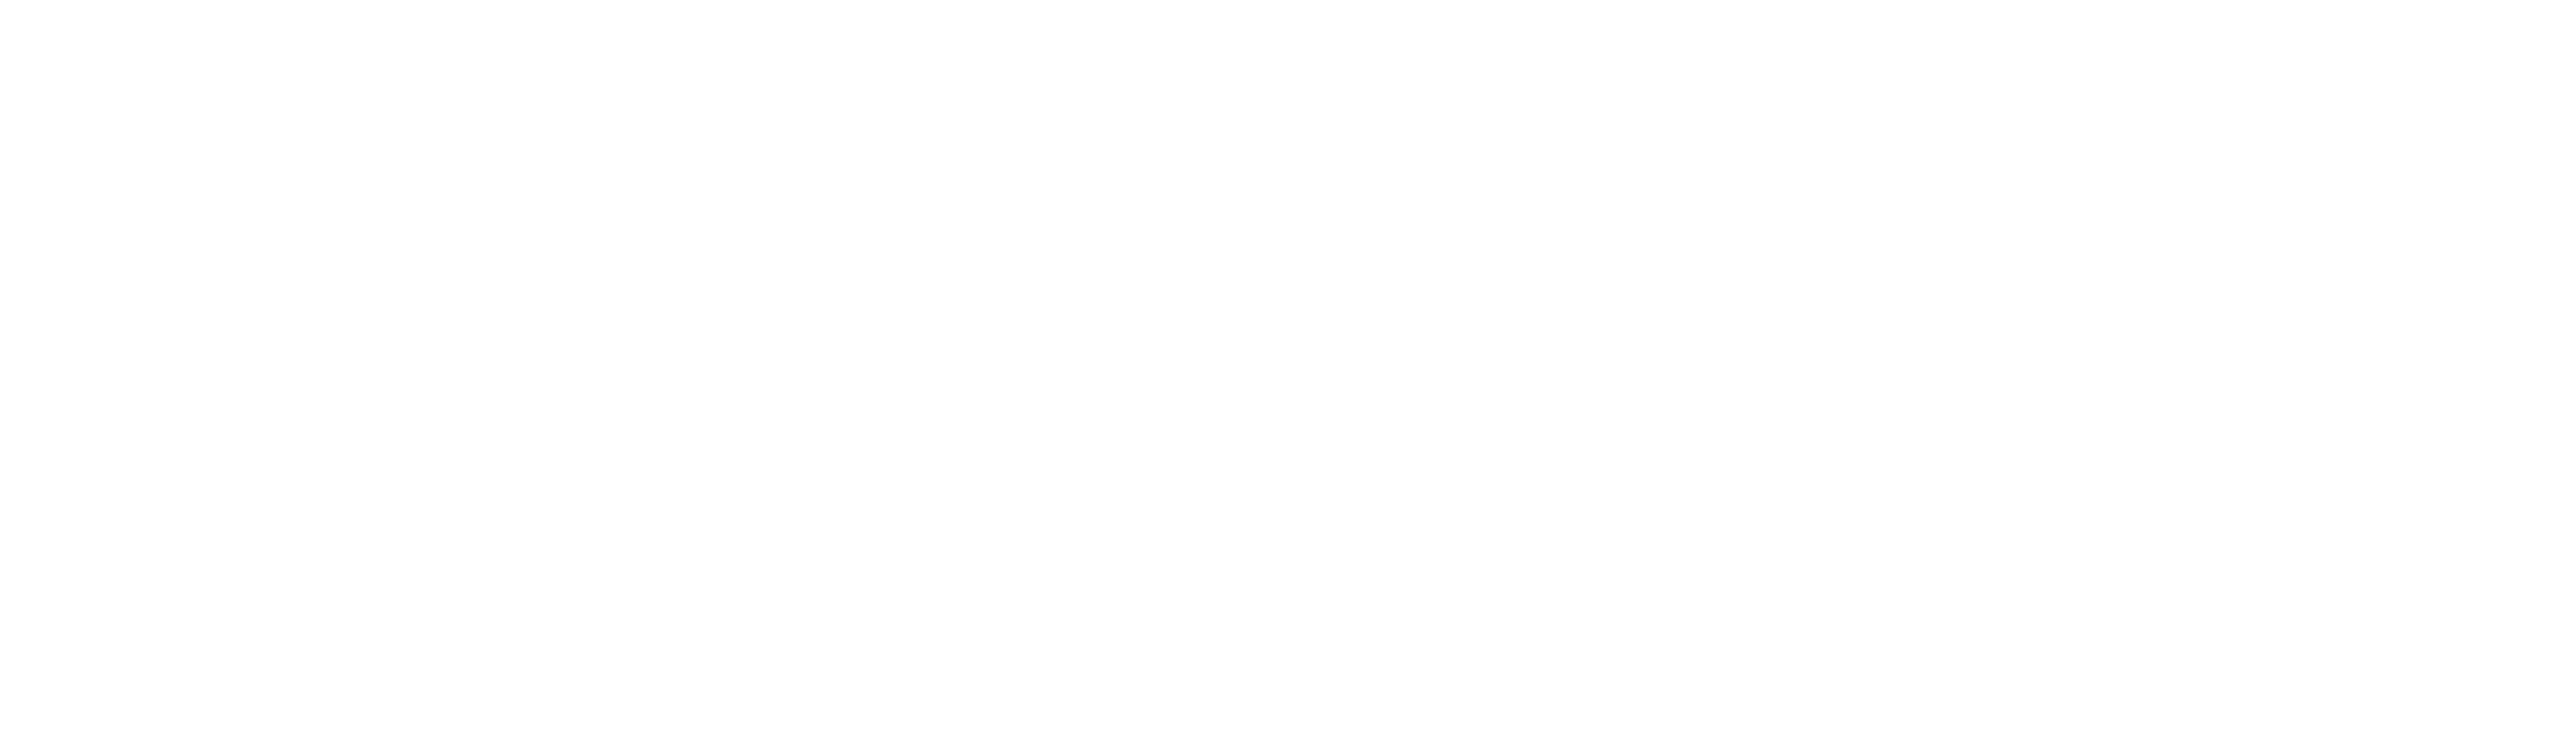 Thompson_White_Logo